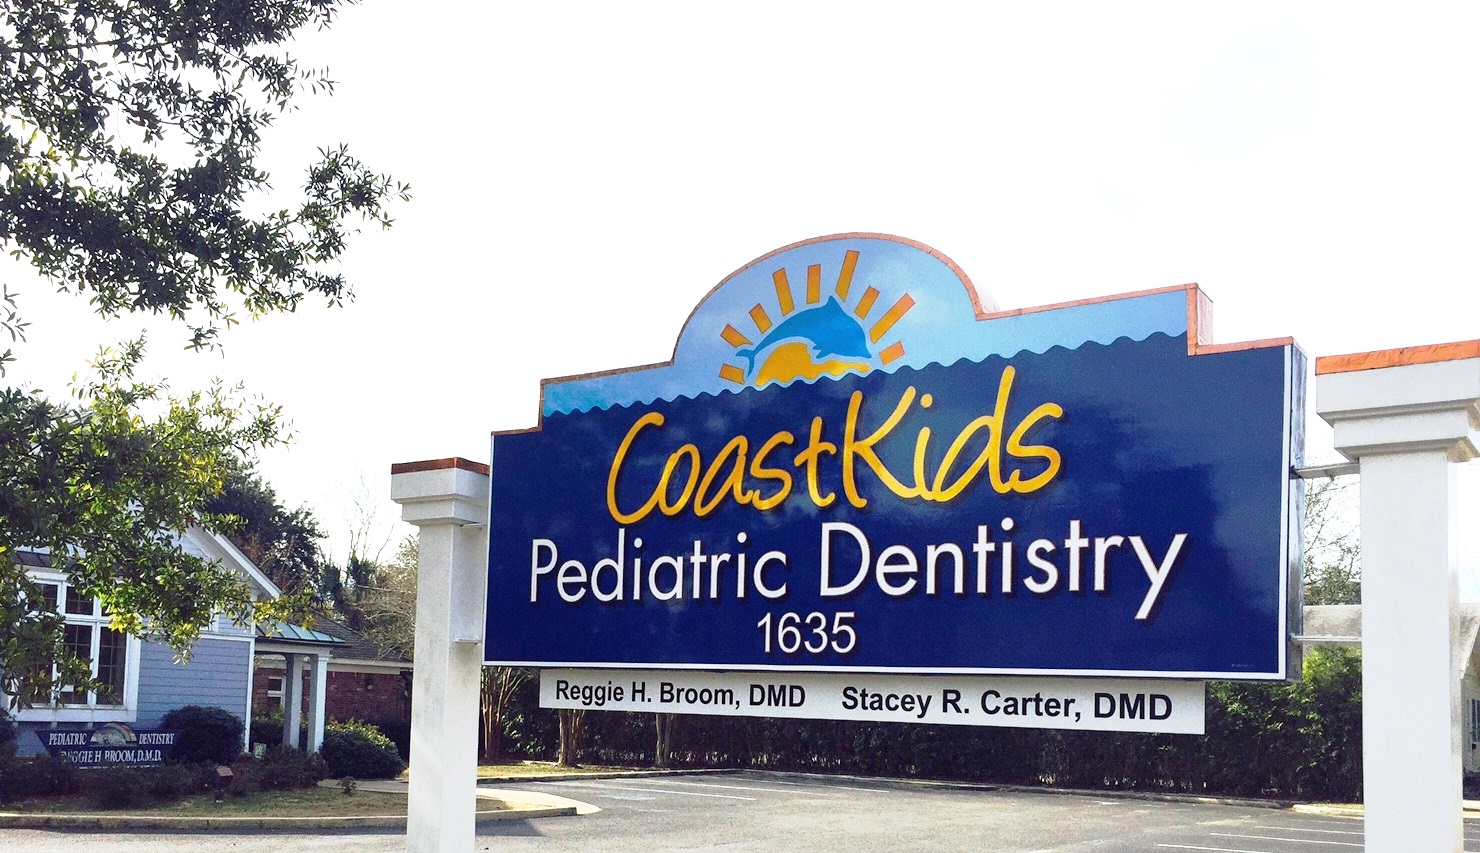 CoastKids Pediatric Dentistry